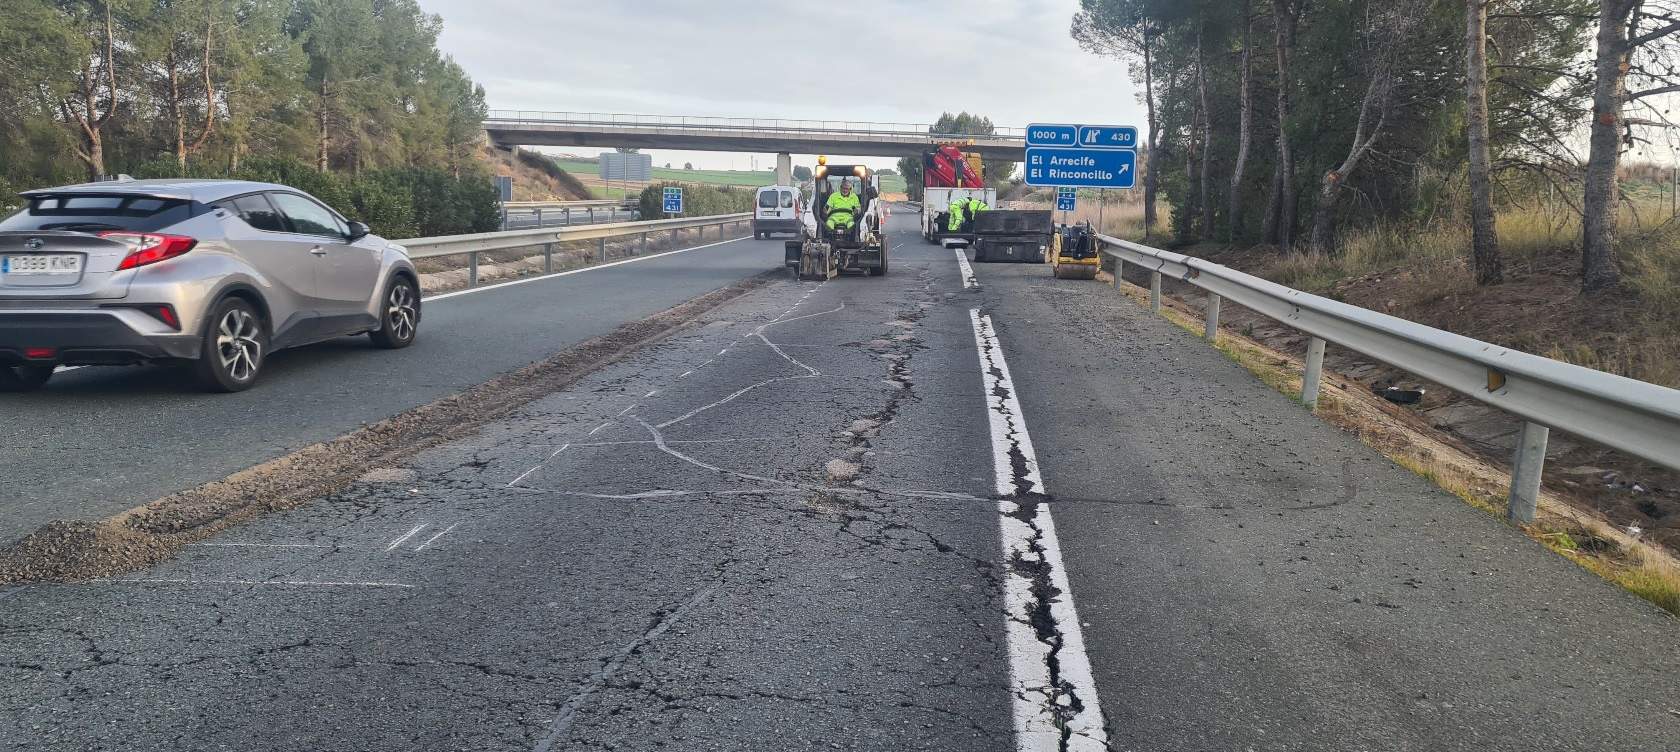 El Gobierno destina 110 millones a la conservación de 785 km de carreteras en Jaén, Ourense, Ávila y Cantabria